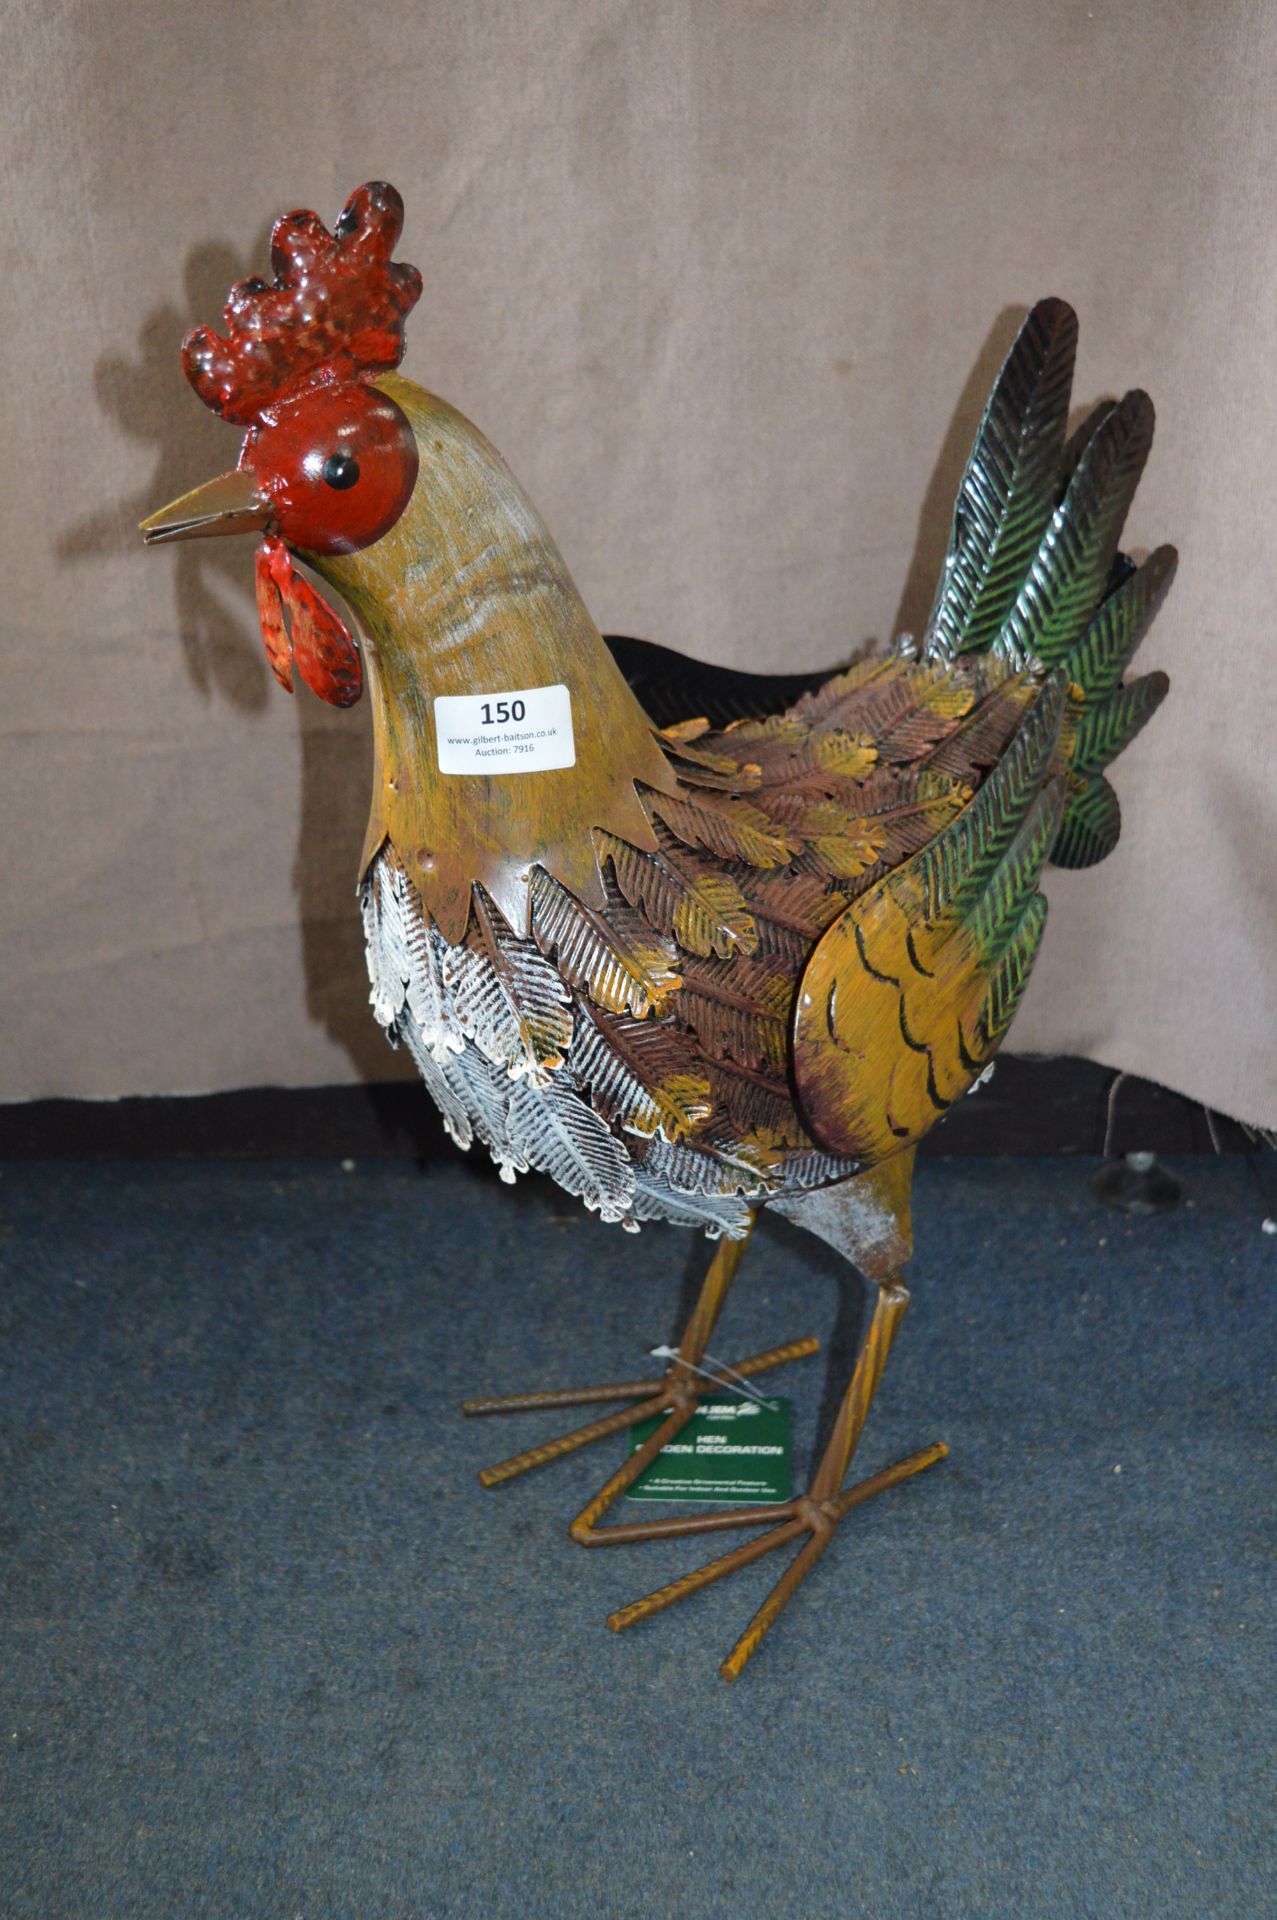 *Ornamental Painted Metal Chicken